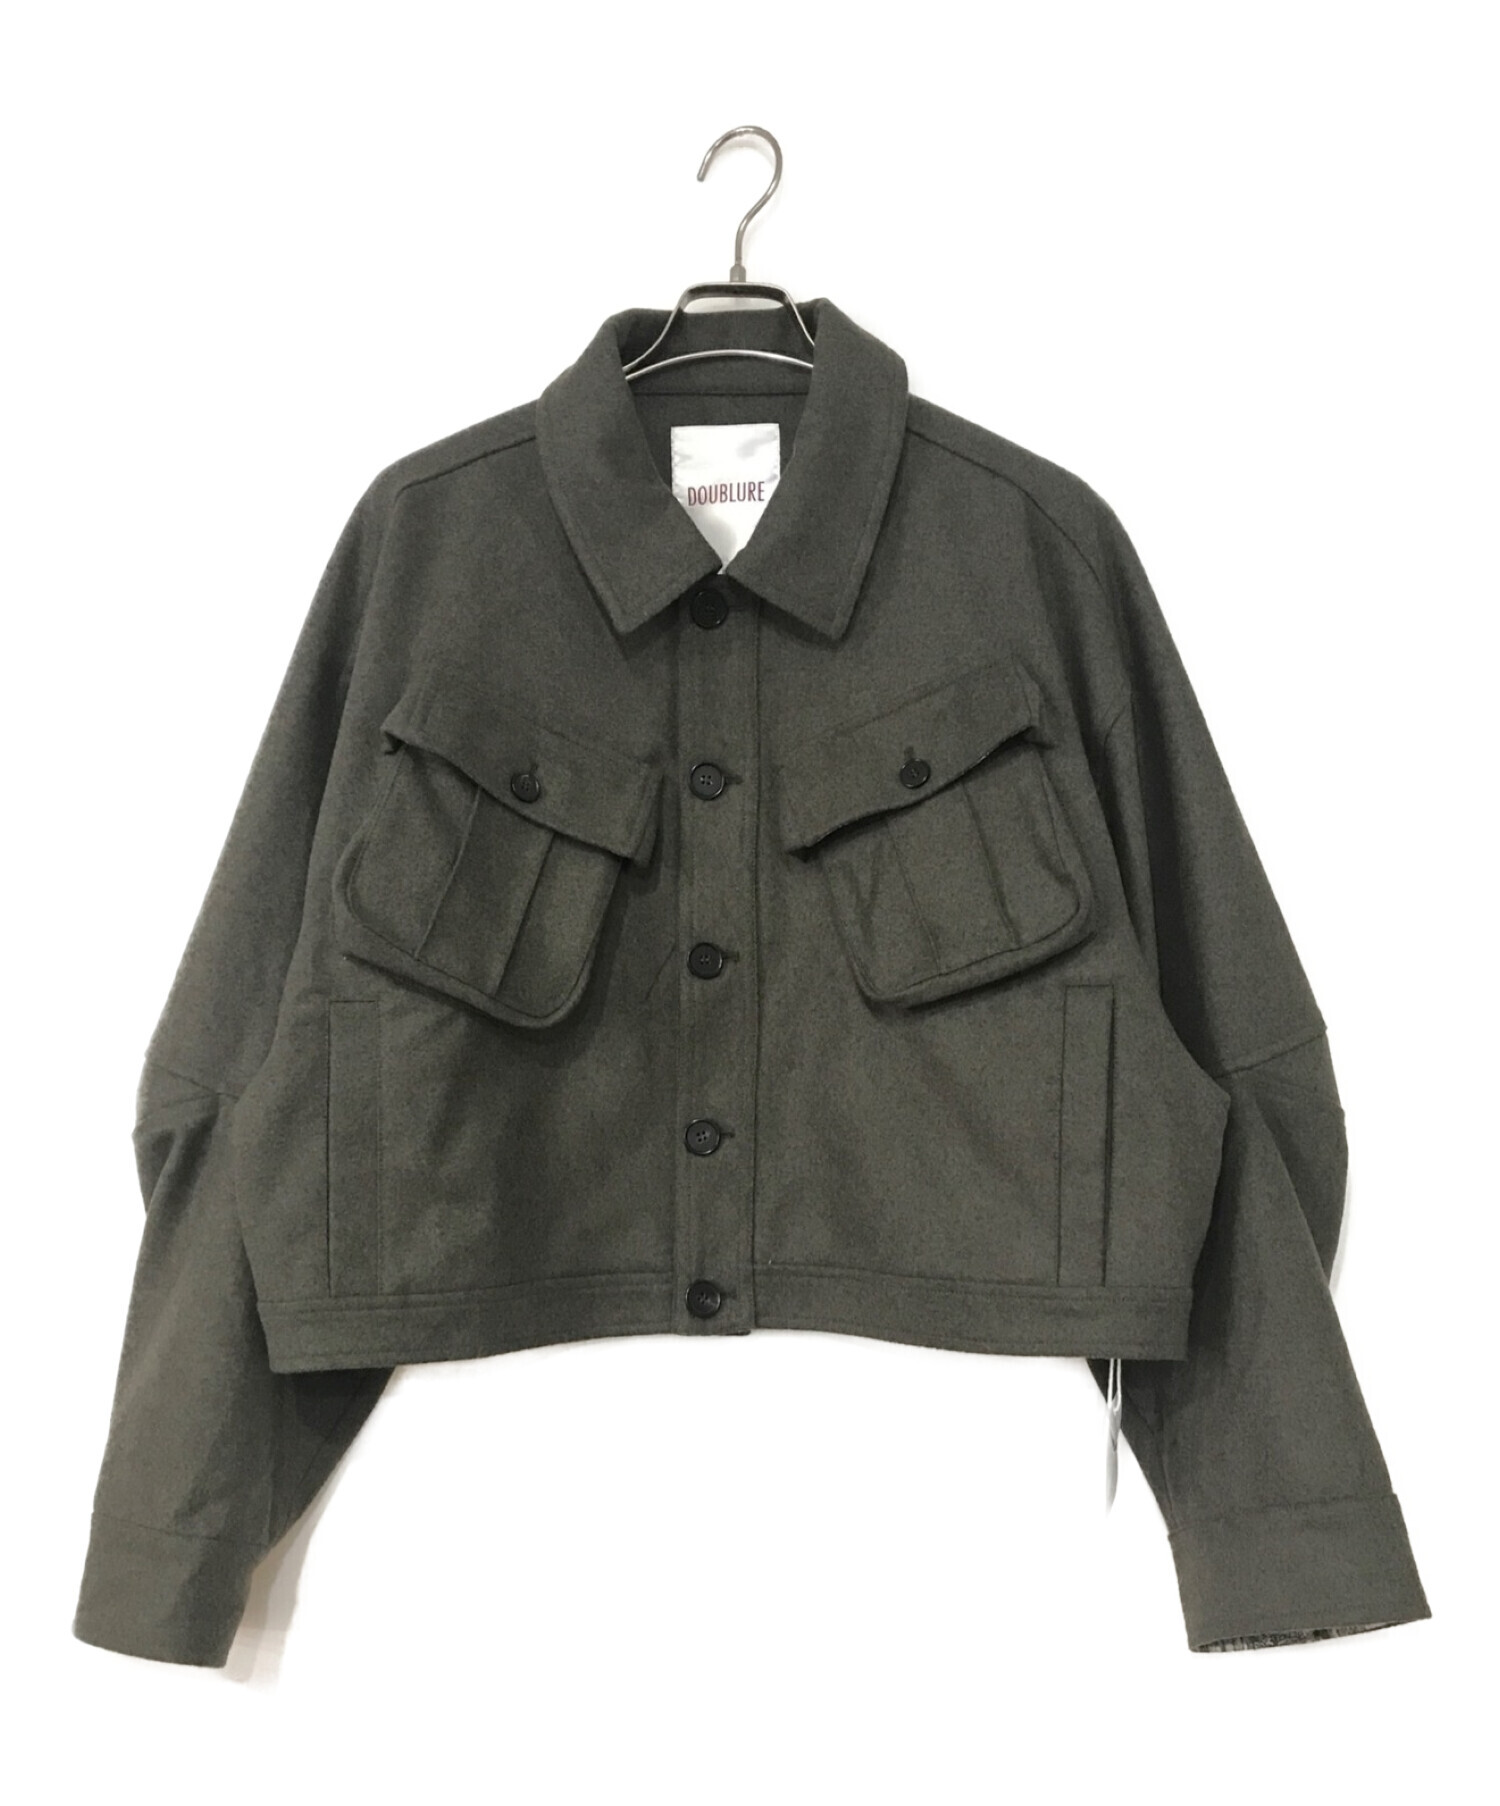 DOUBLURE (ダブルア) Short Wool Jacket オリーブ サイズ:L